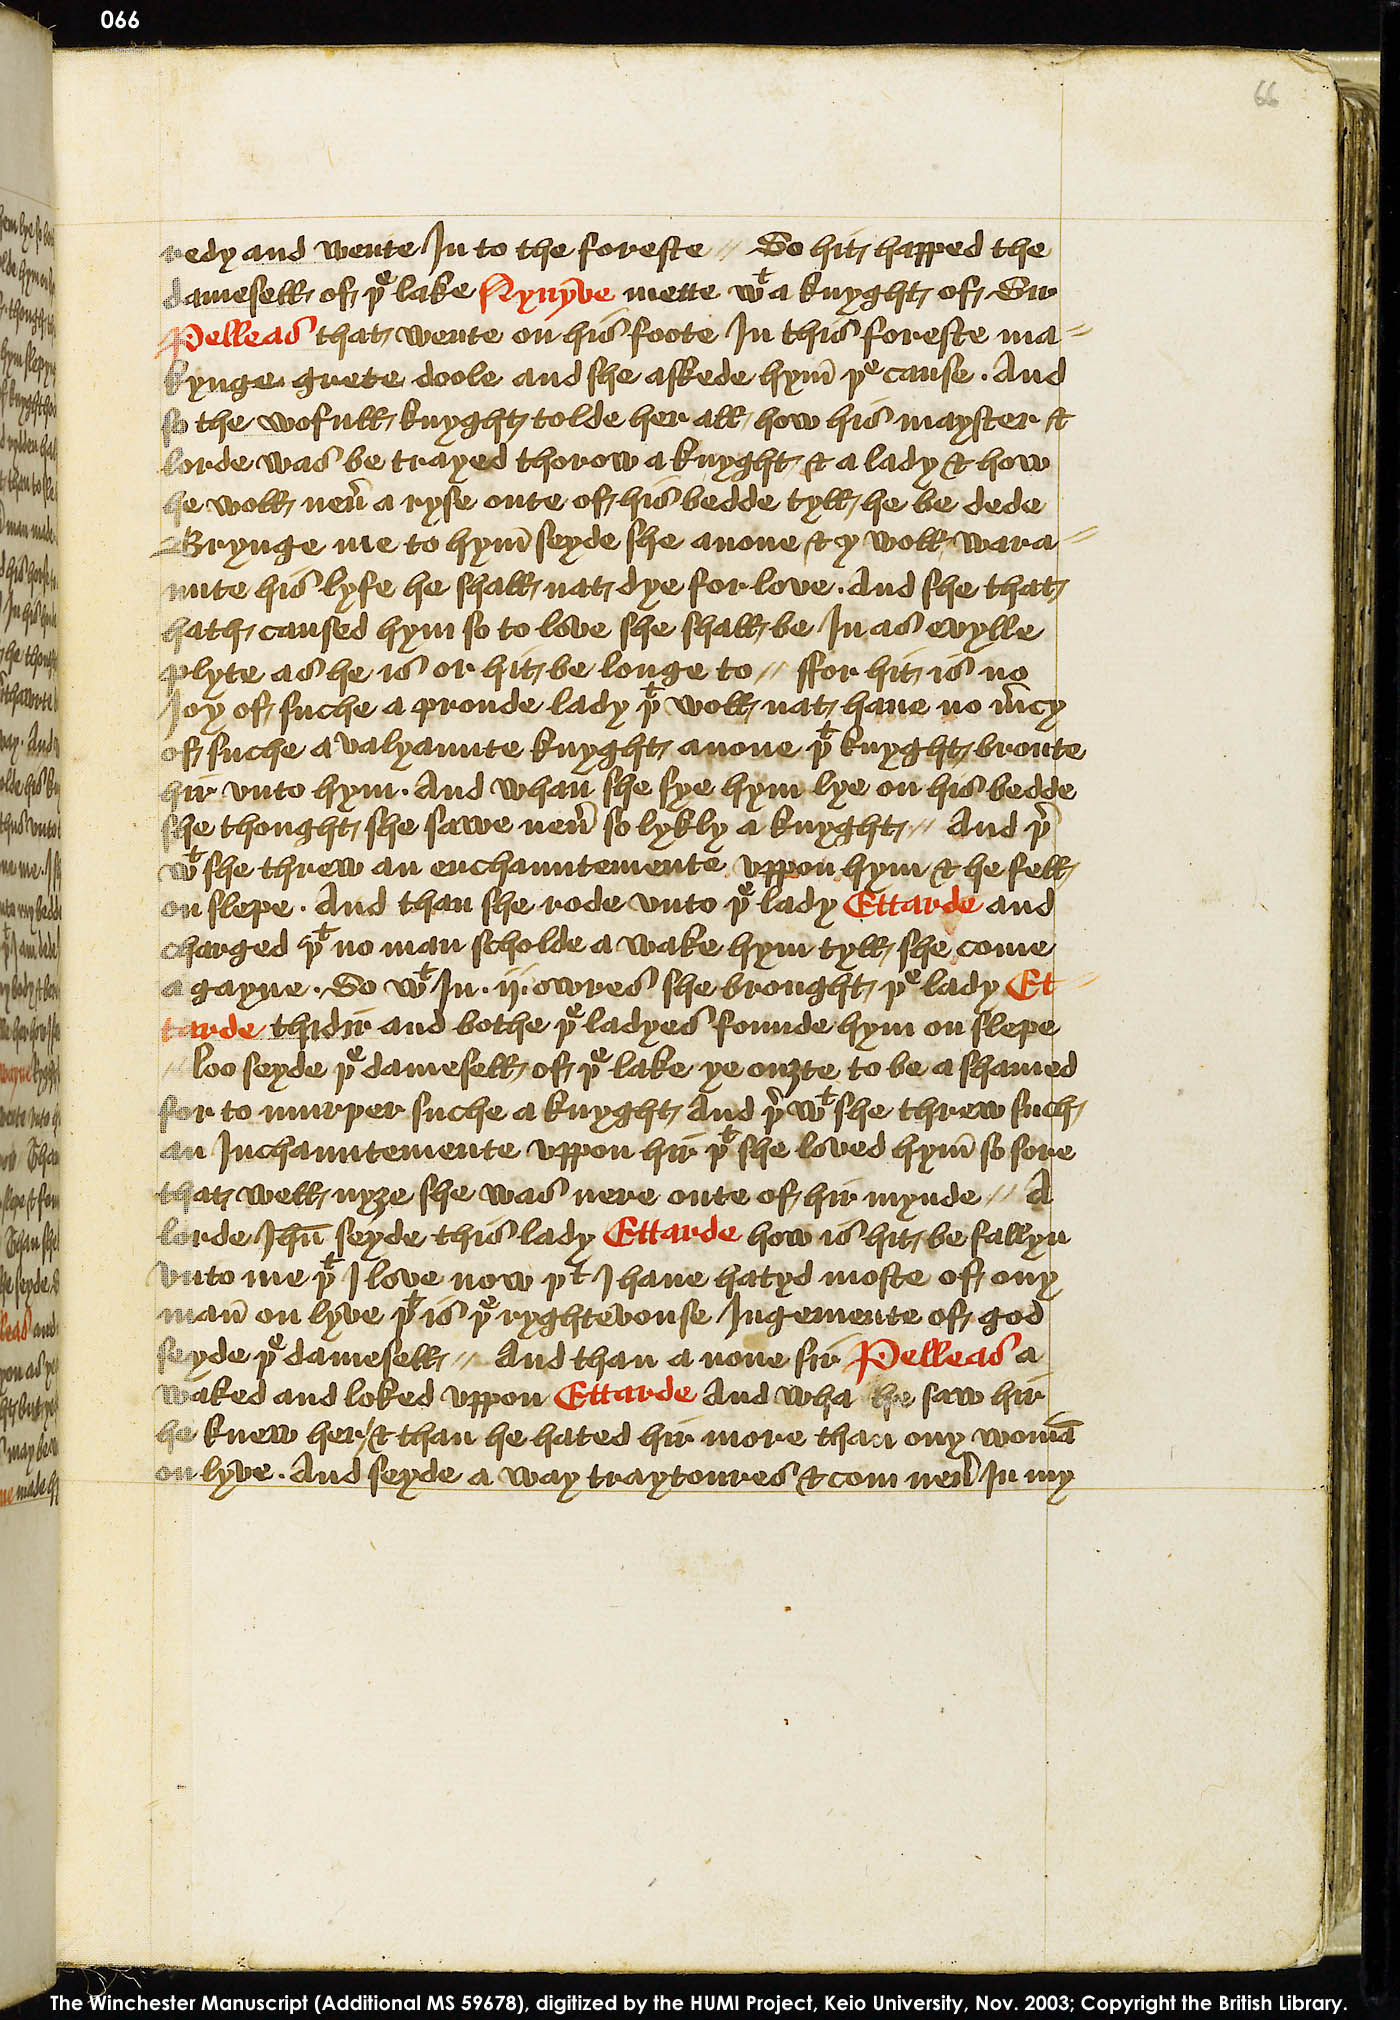 Folio 66r